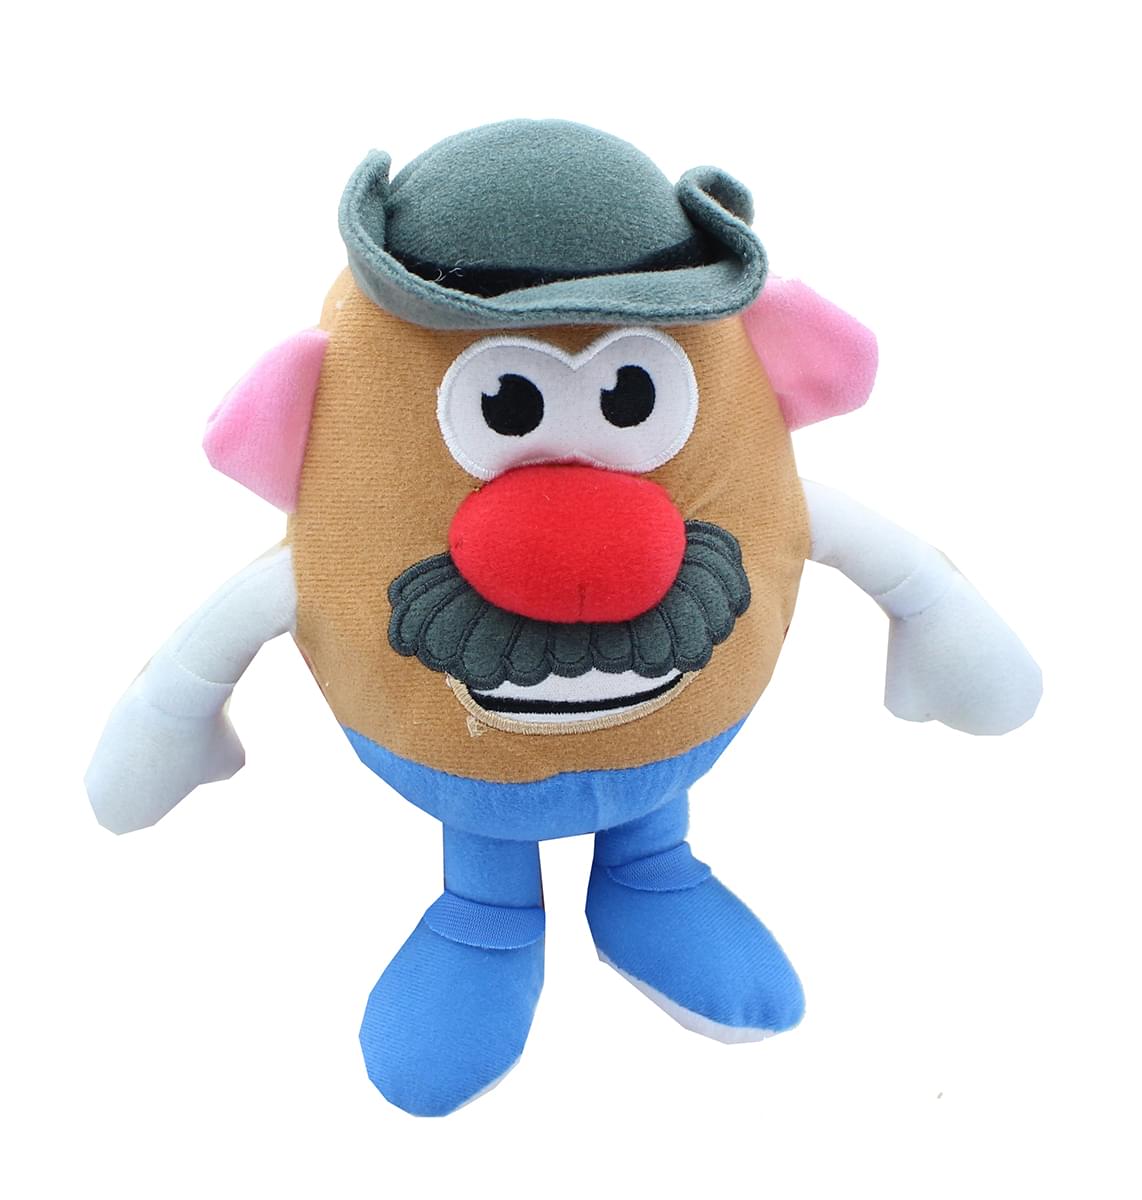 Mr. Potato Head 6 Inch Character Plush | Mr. Potato Head